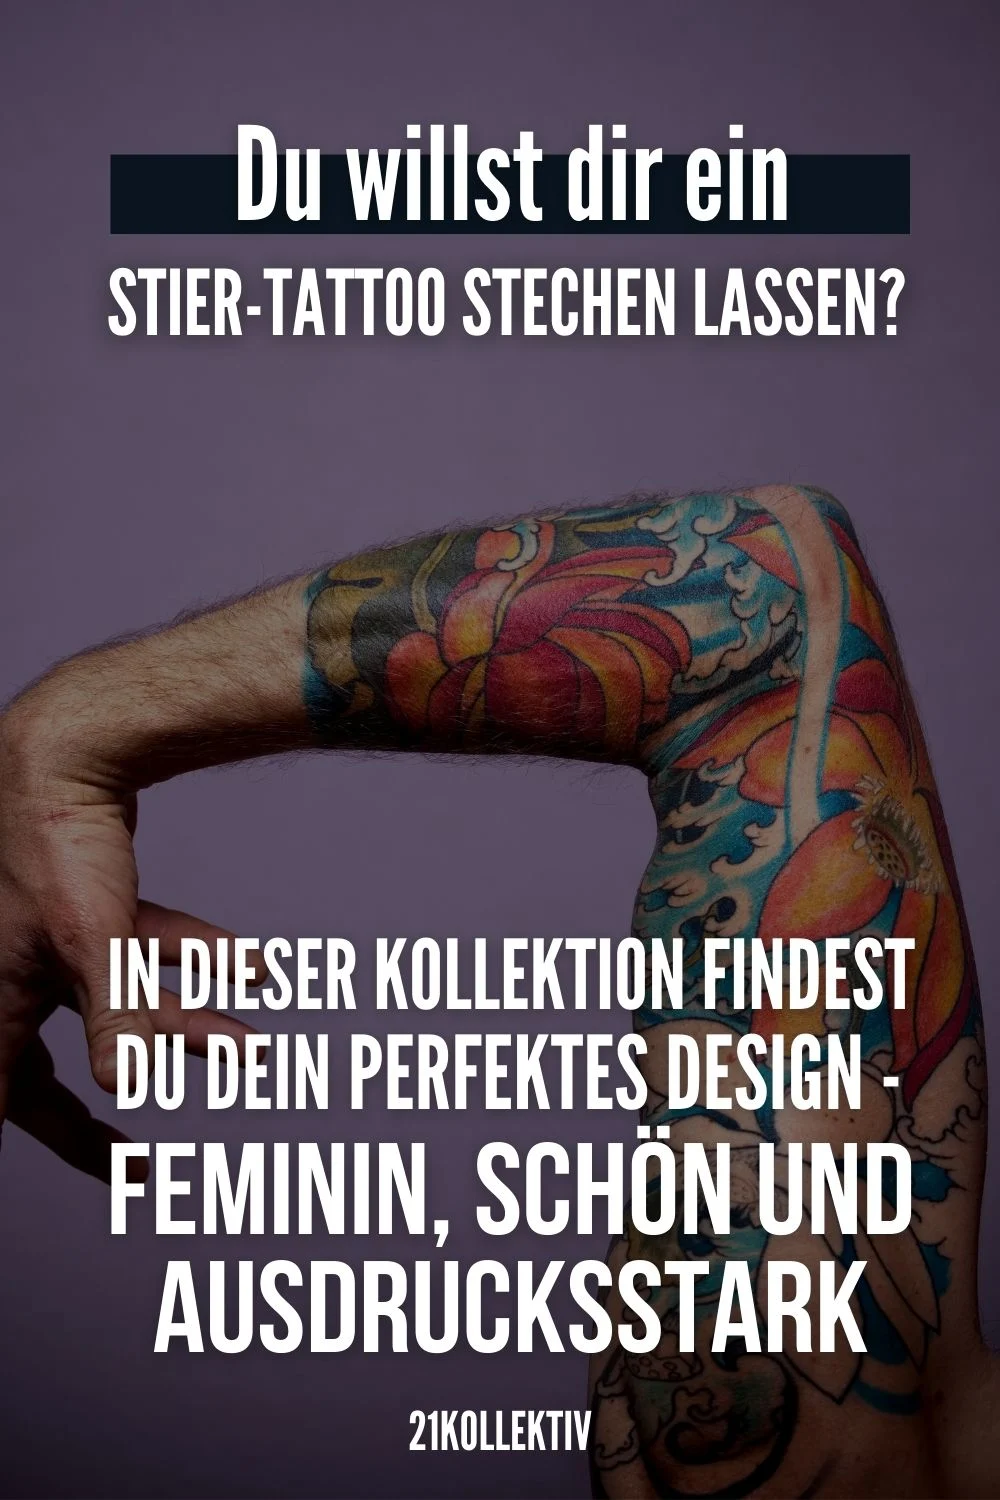 Du willst dir ein Stier-Tattoo stechen lassen? In dieser Kollektion findest du dein perfektes Design - feminin, schön und ausdrucksstark